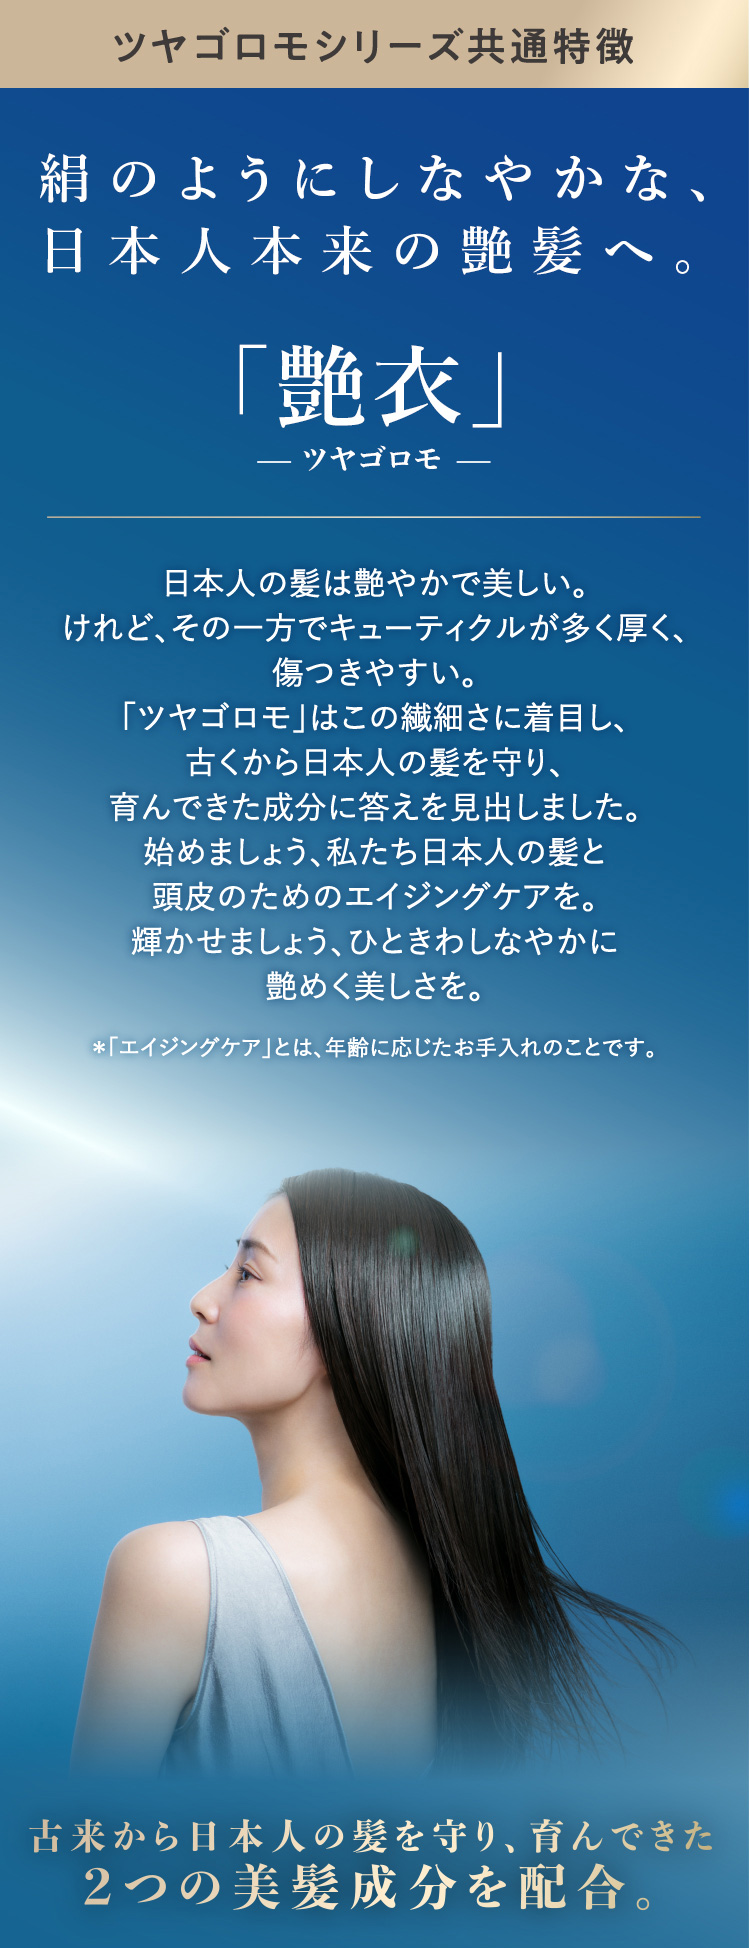 お中元 マイルドクレンジング シャンプー 2本 アミノ酸シャンプー 敏感肌 無添加 化粧品 頭皮ケア 女性 ヘアケアシャンプー ファンケル FANCL  公式